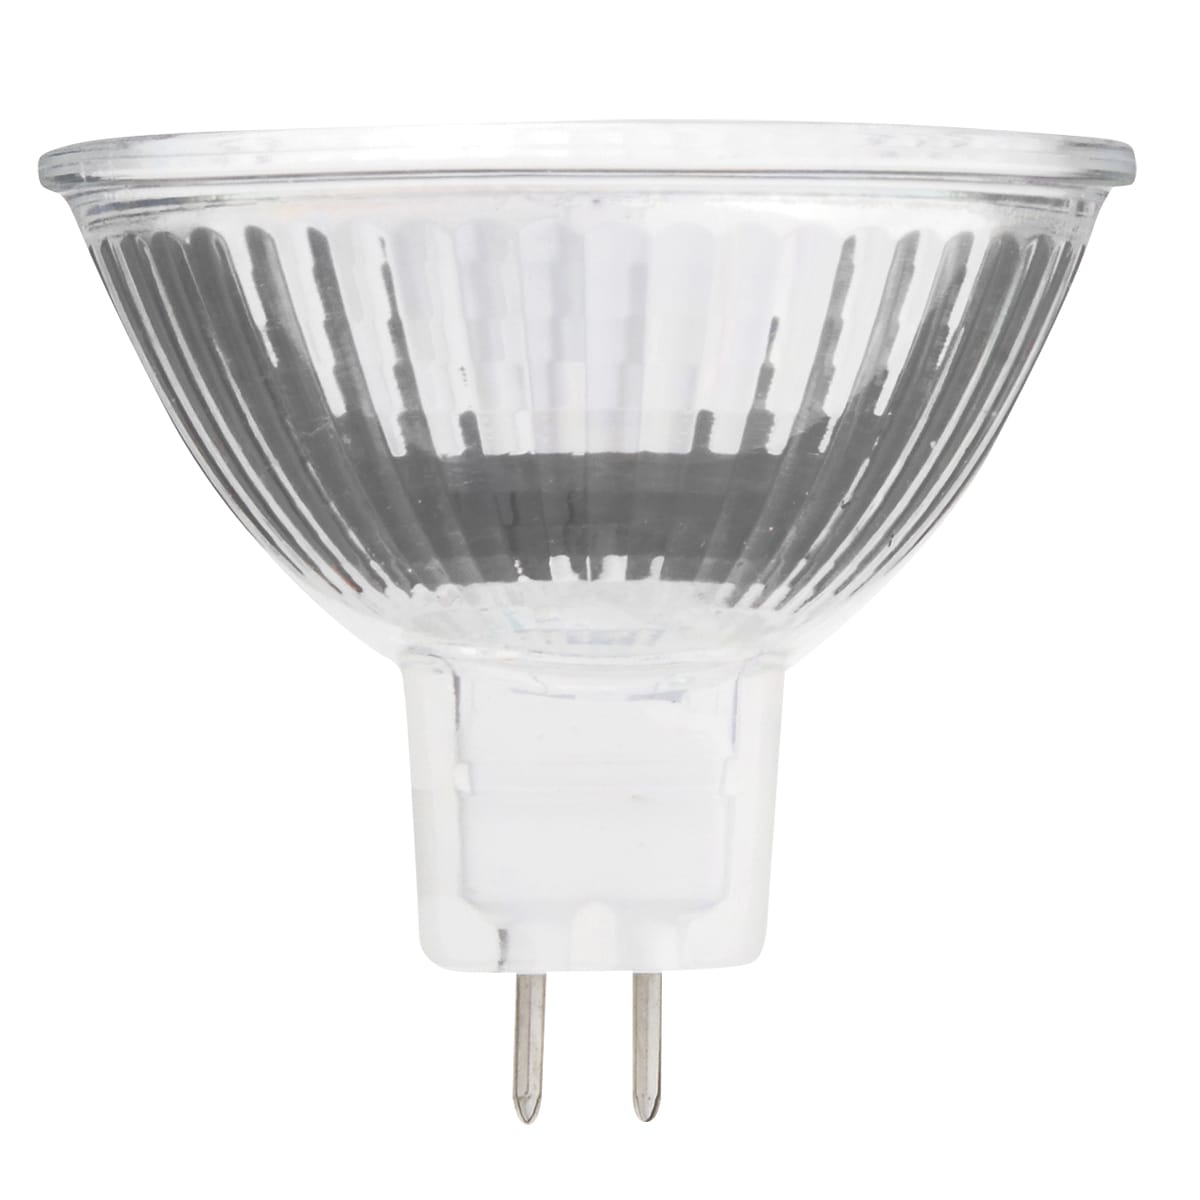 6 LOW VOLTAGE LAMP HOLDER MR16 GU5.3 HALOGEN LED LIGHT BULB SOCKET CONNECTOR 